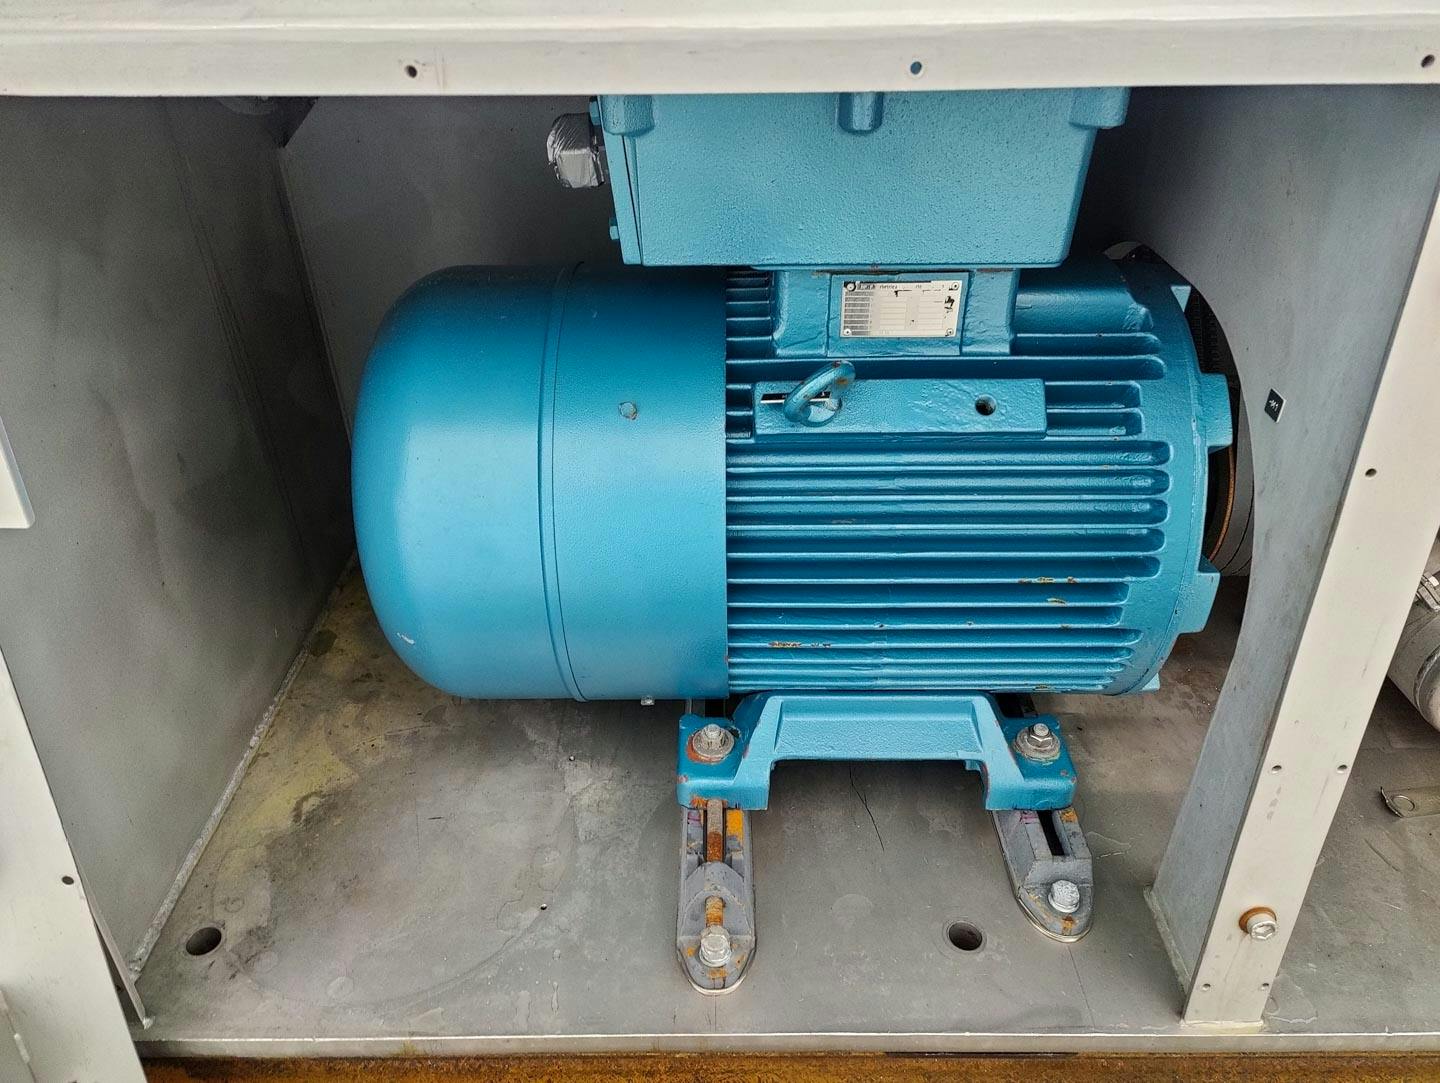 Fima Process Trockner TZT-1300 - centrifuge dryer - Wirówka koszowa - image 12